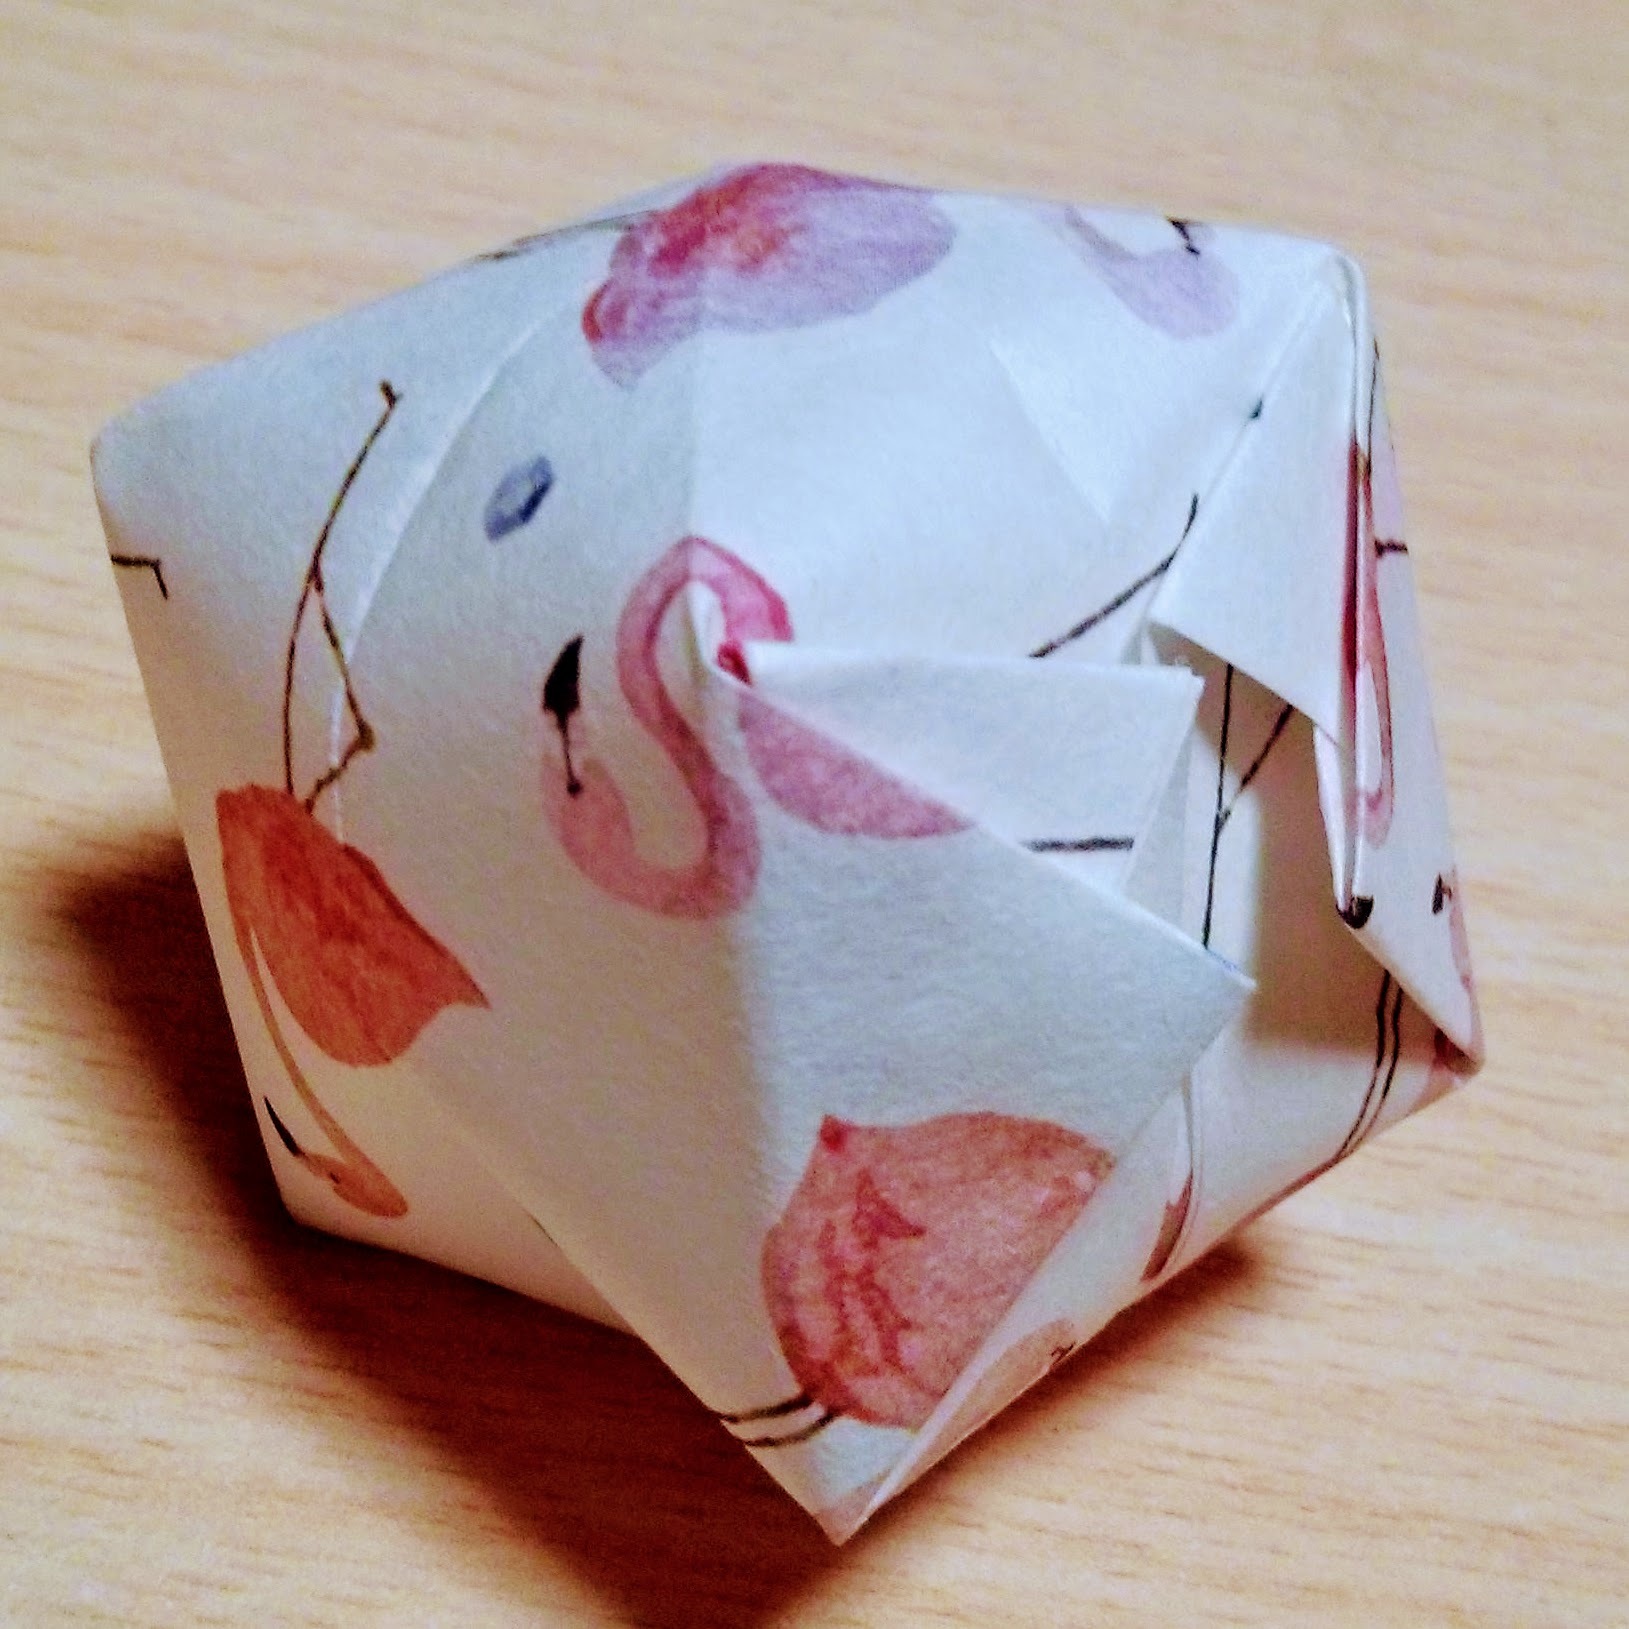 面白い折り紙の折り方17選 簡単変わり種や子供喜ぶすごいネタまでご紹介 暮らし の